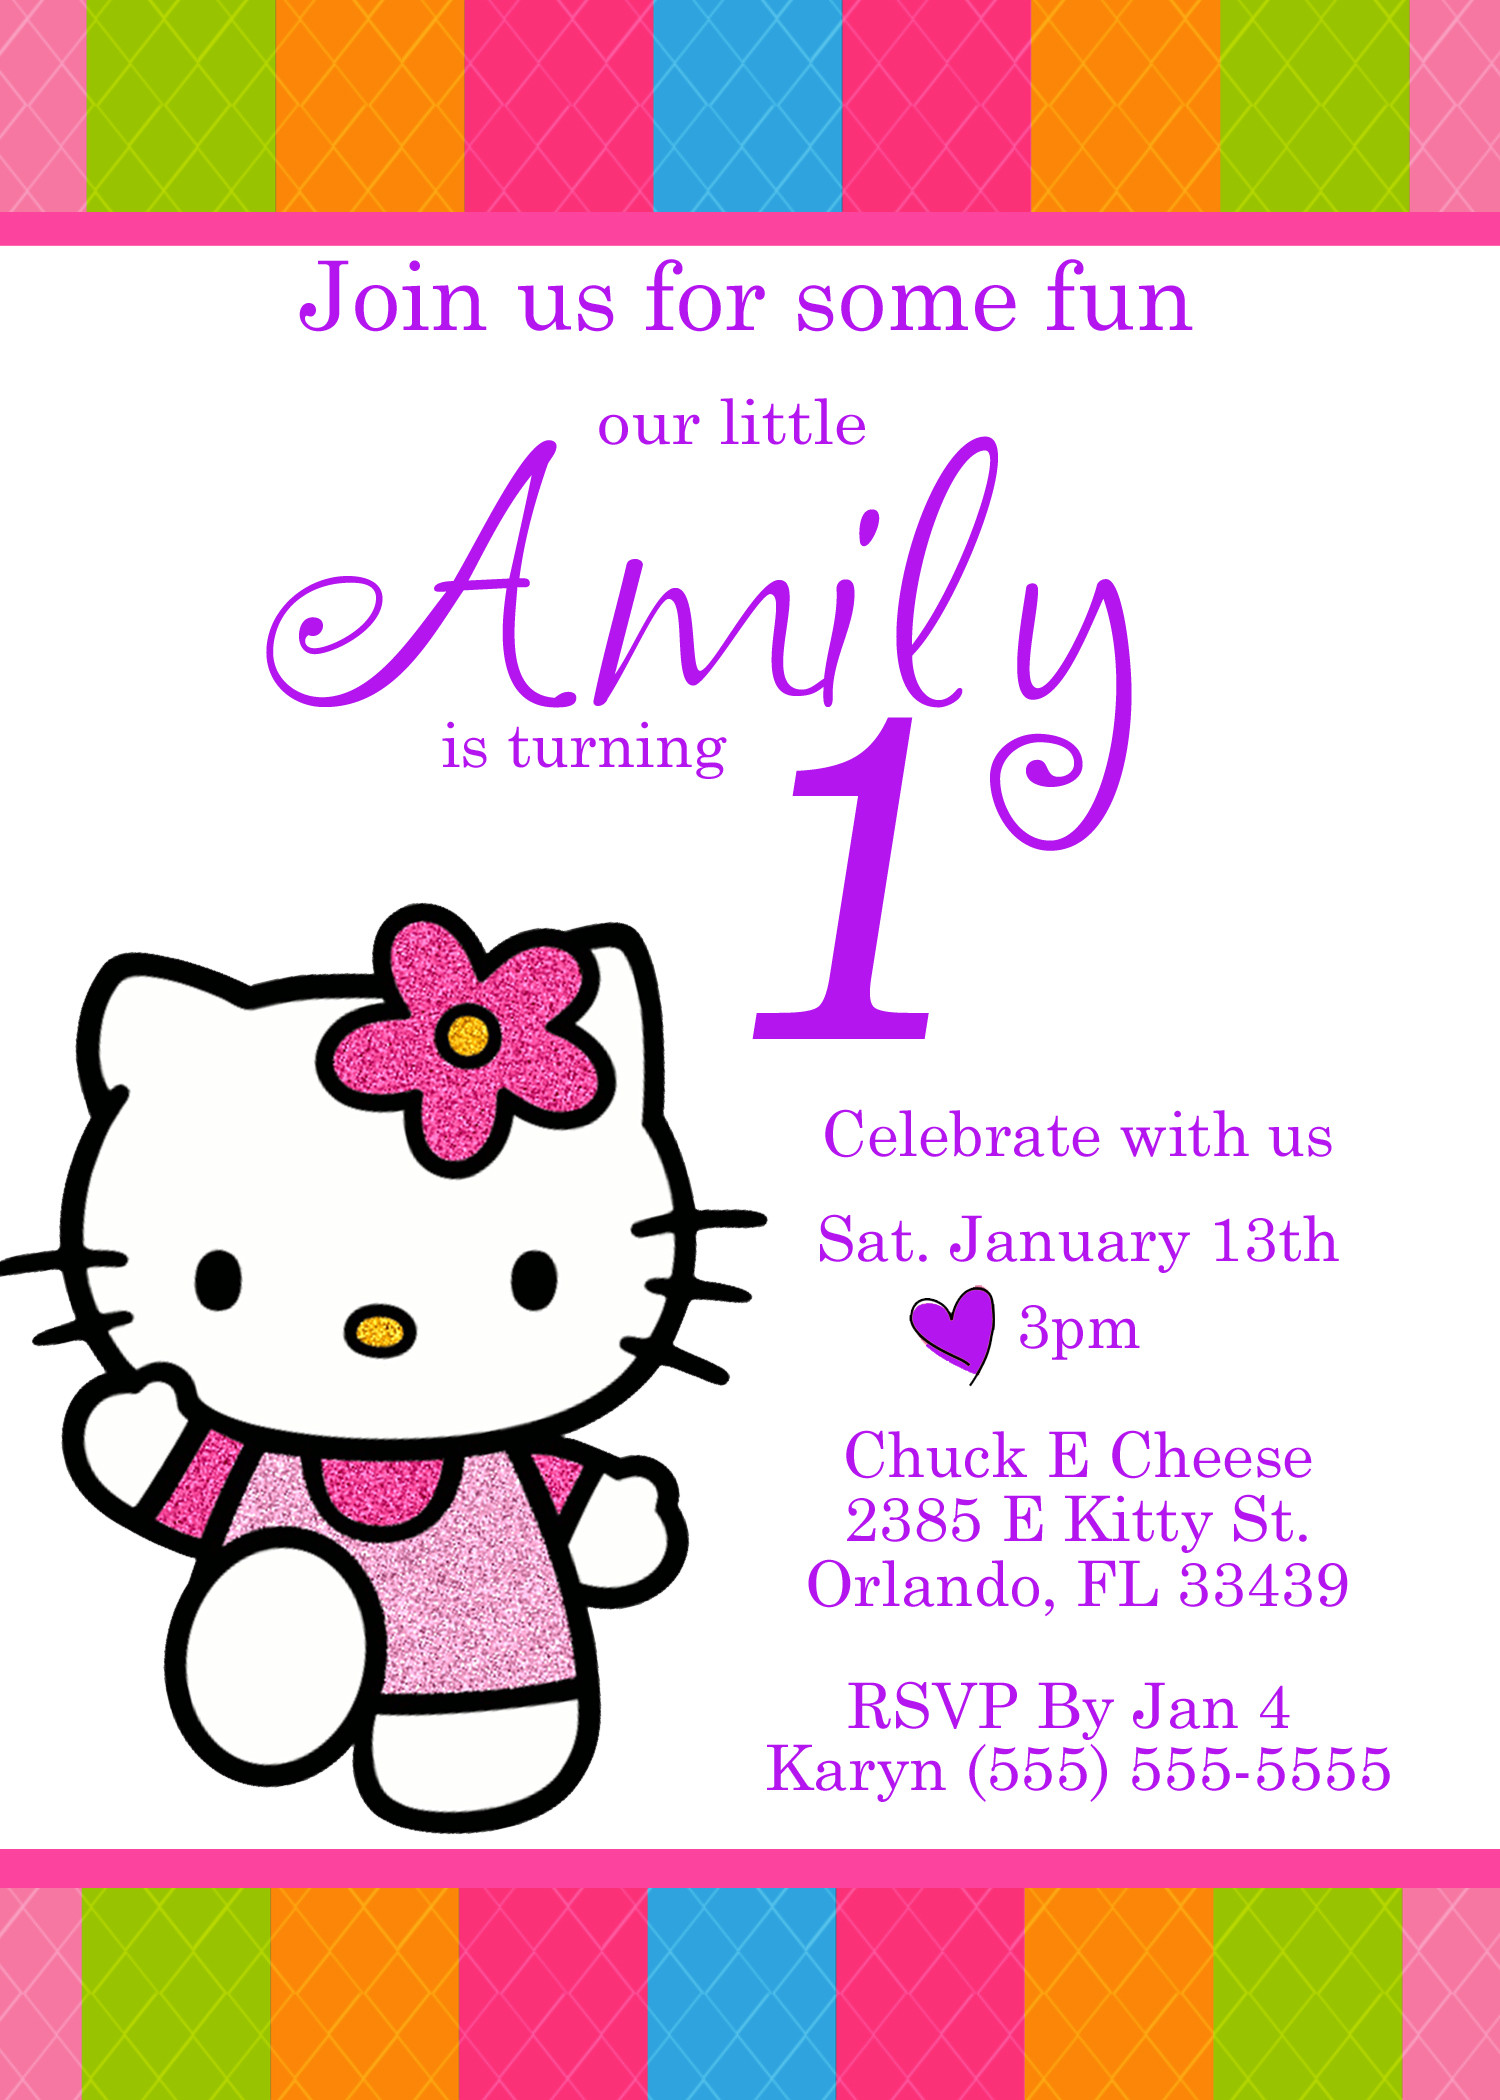 Best ideas about Hello Kitty Birthday Invitations
. Save or Pin Hello Kitty Birthday Invitation Now.